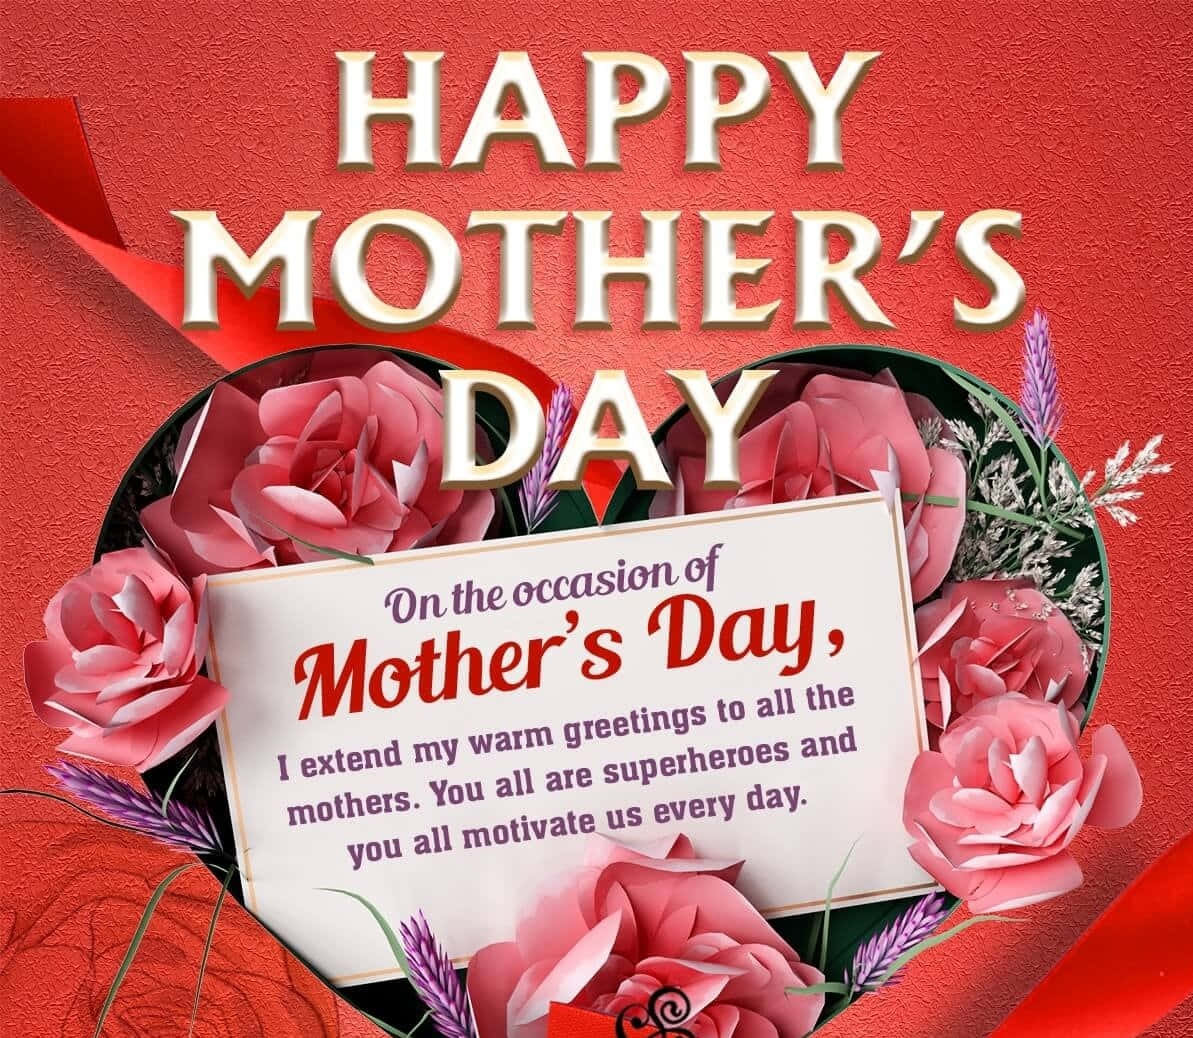 Celebreo Amor Incondicional E A Apreciação De Sua Mãe Neste #diadasmães!